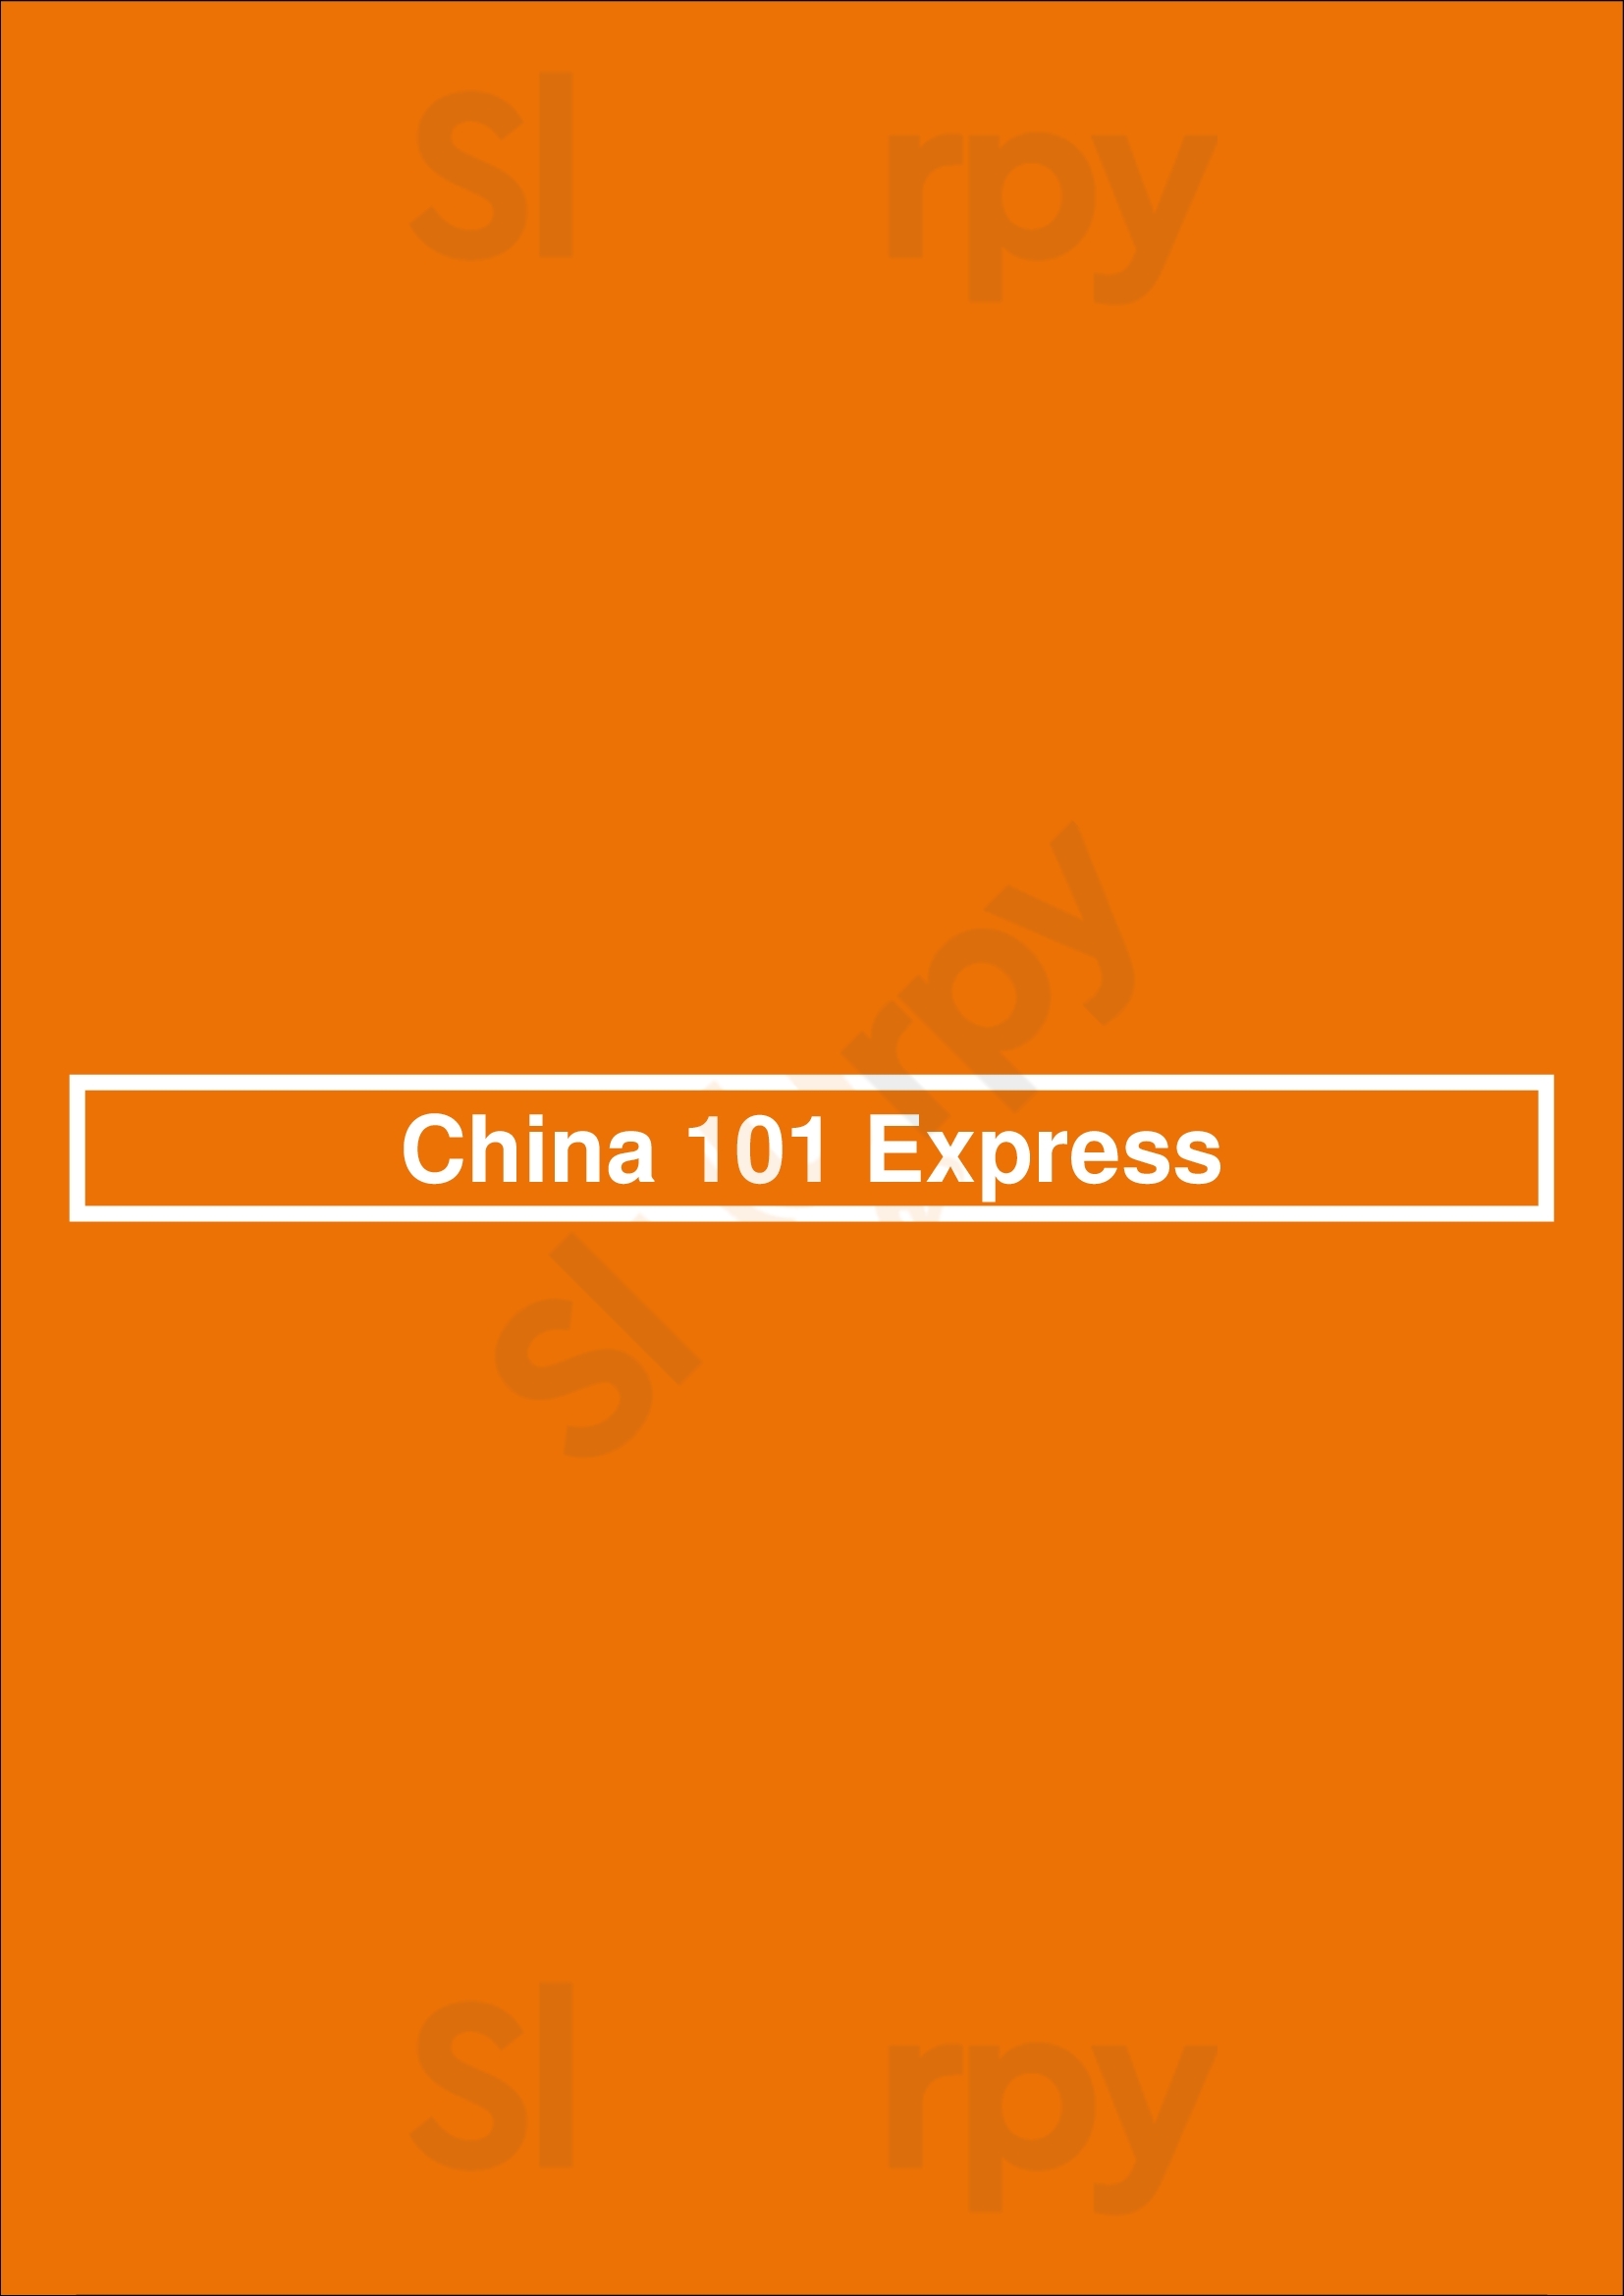 China 101 Express Houston Menu - 1